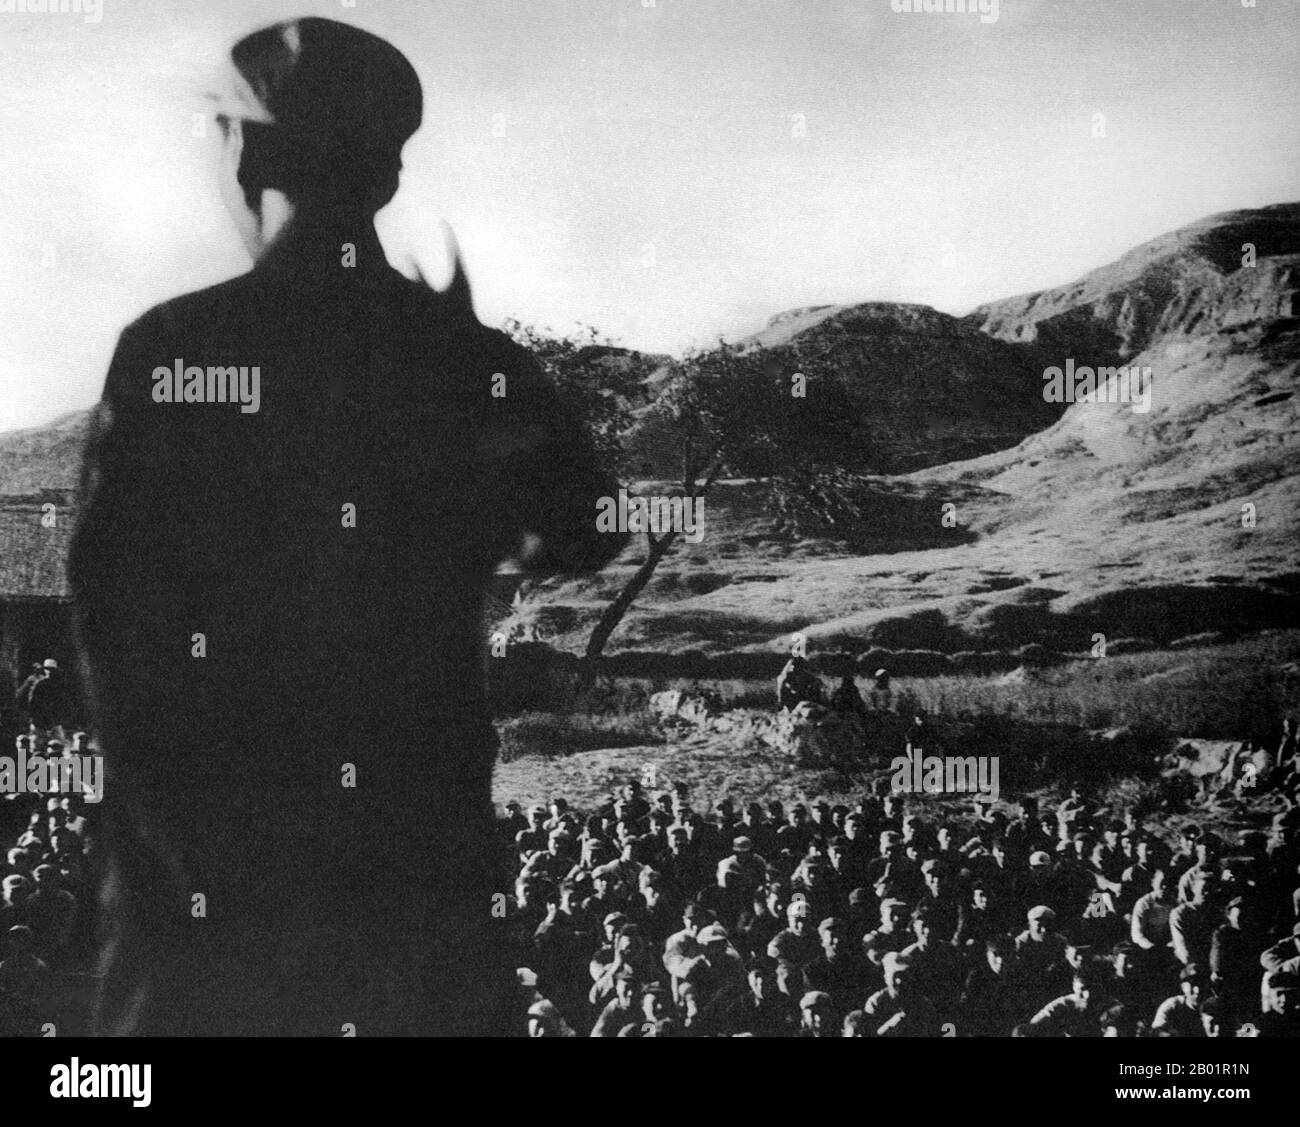 Cina: Un gruppo dirigente tiene un discorso ai combattenti dell'Armata Rossa riuniti durante la lunga marcia, Shaanxi, 1936. La lunga marcia (pinyin: Chángzhēng) fu una ritirata militare intrapresa dall'Armata Rossa del Partito Comunista Cinese, precursore dell'Esercito Popolare di Liberazione, per sfuggire all'inseguimento dell'esercito del Kuomintang (KMT o Partito nazionalista Cinese). Non ci fu una lunga marcia, ma una serie di marce, poiché vari eserciti comunisti nel sud fuggirono a nord e ad ovest. La più conosciuta è la marcia dalla provincia di Jiangxi iniziata nell'ottobre 1934. Foto Stock